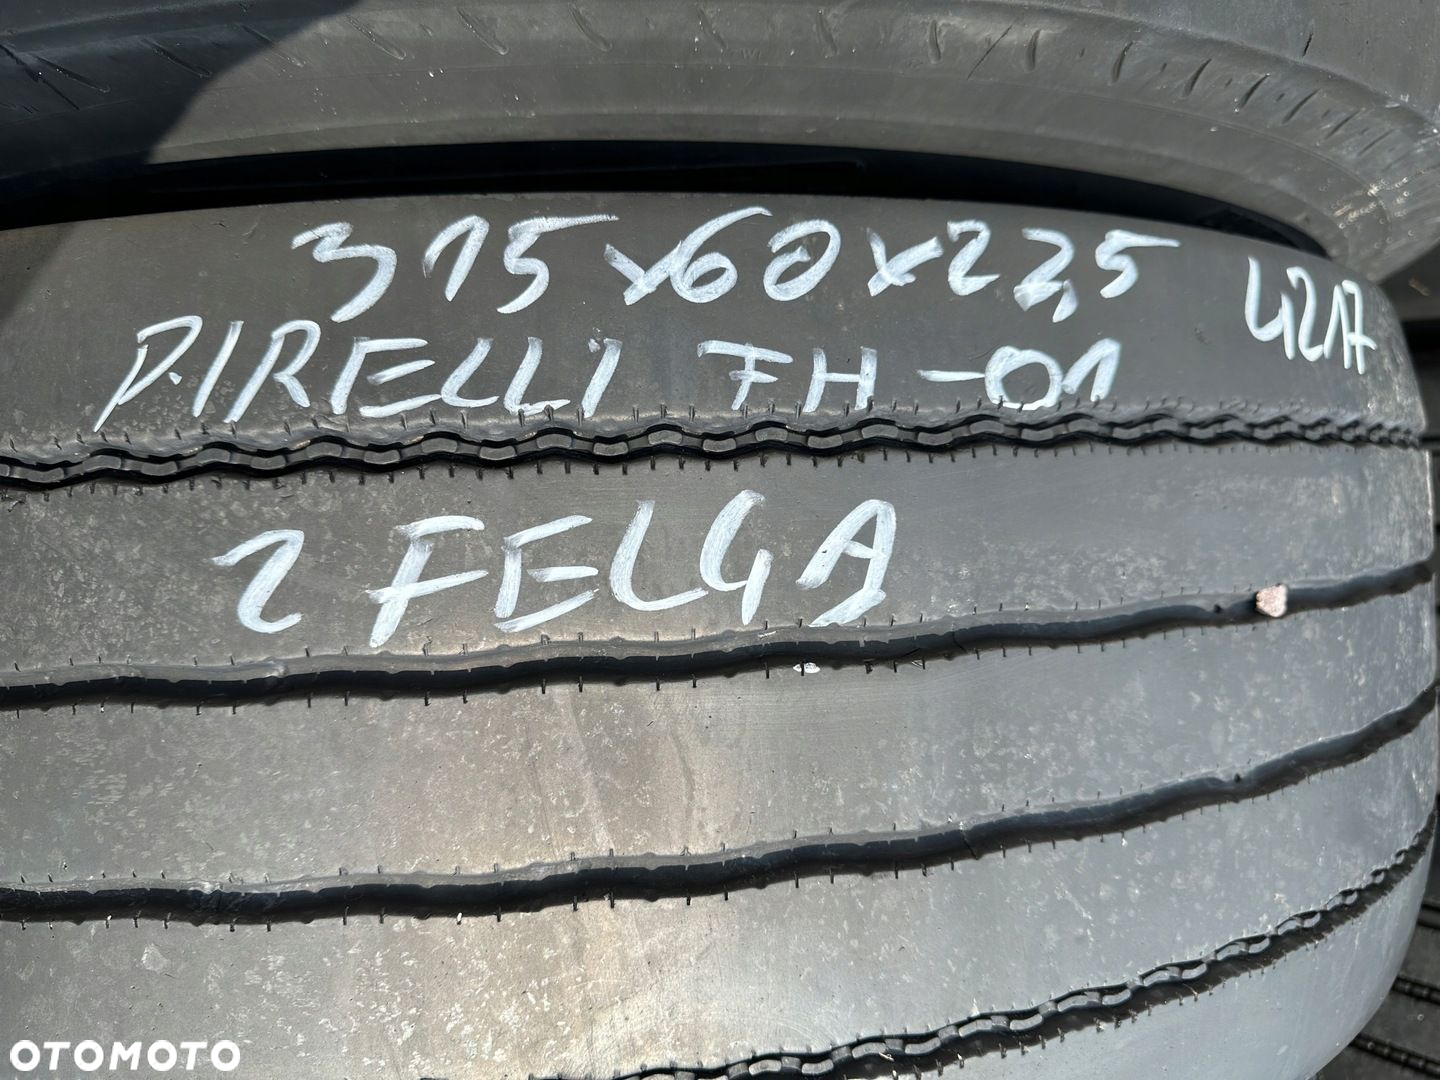 Opona Koło Pirelli FH-01 315/60 R 22.5 - 3